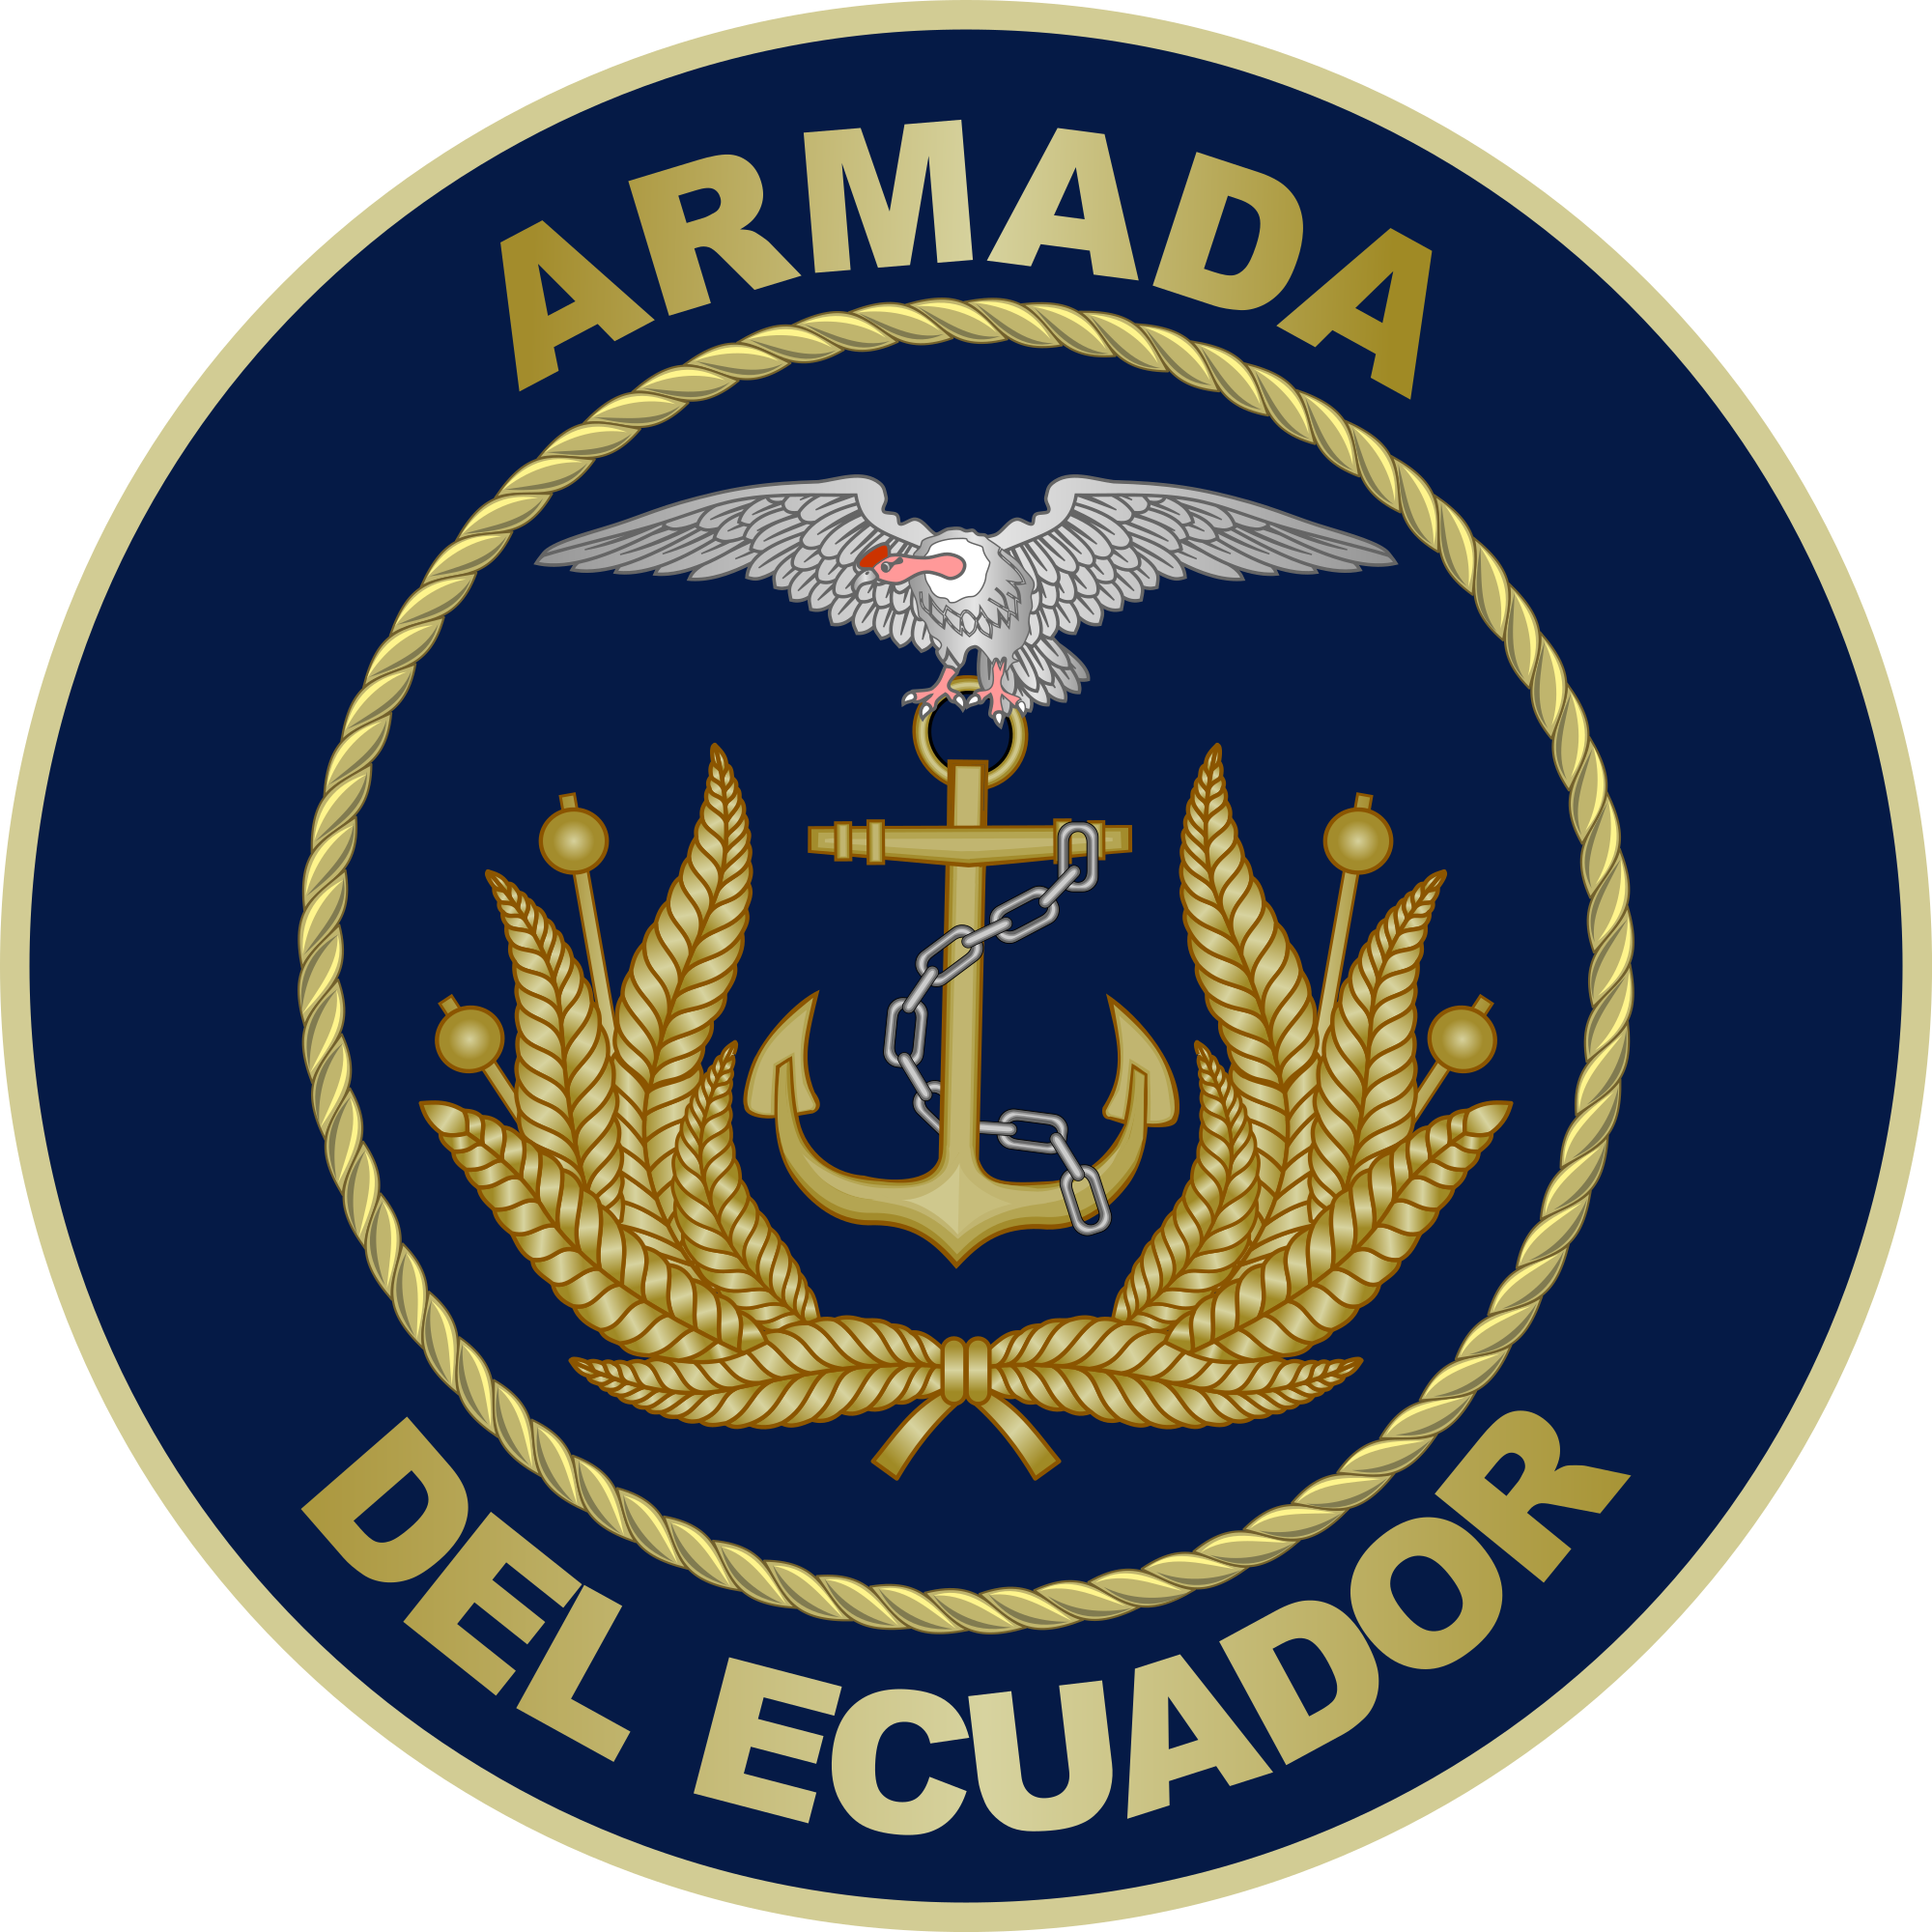 Ecuadorian Navy Seal Ecuadorian Navy Day